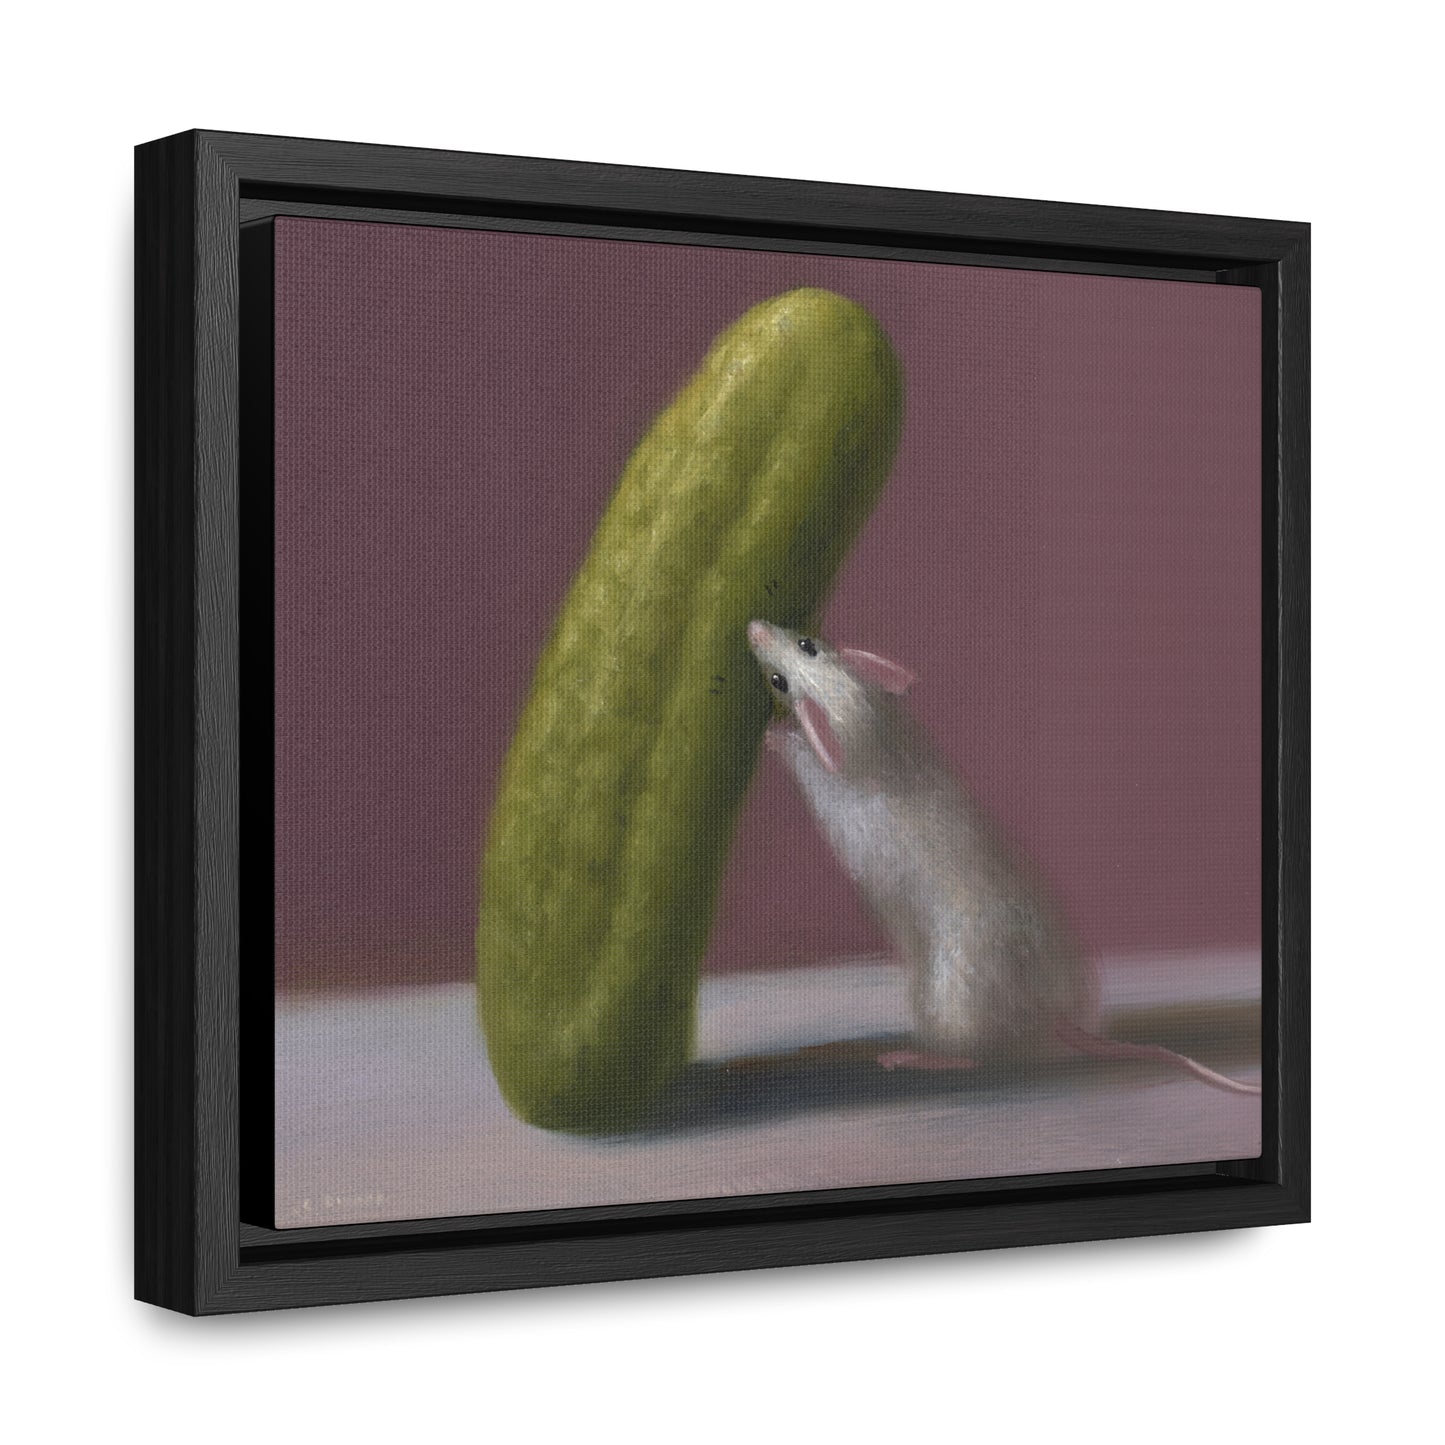 Stuart Dunkel: "Pickled" - Framed Canvas Reproduction